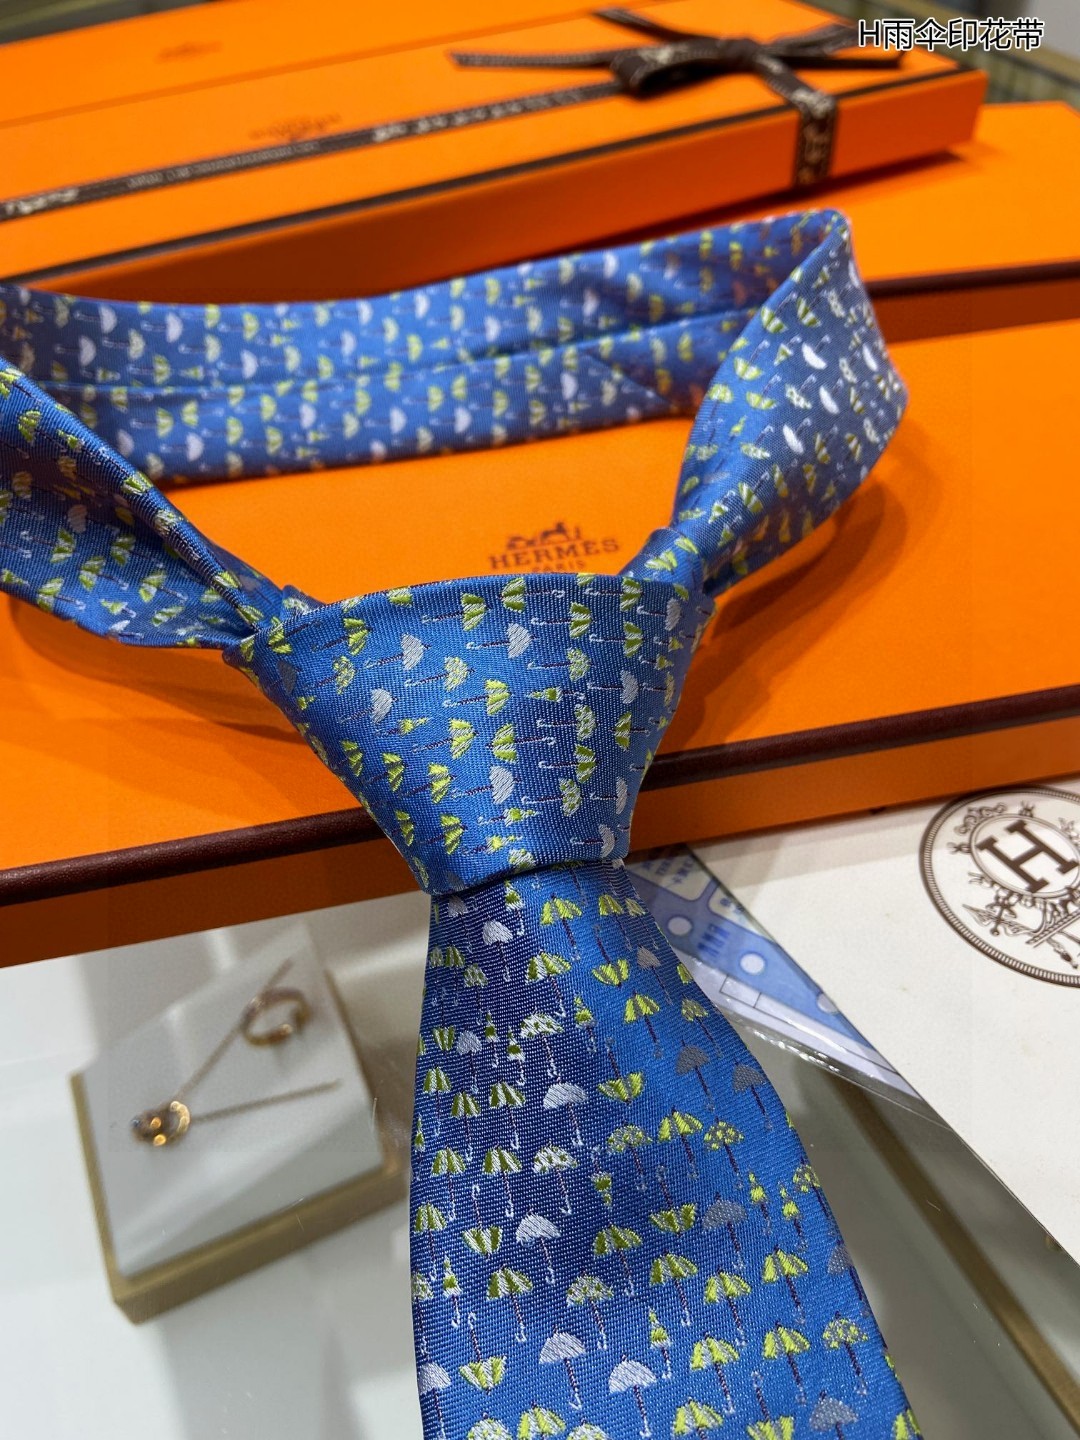 男士新款领带系列H雨伞印花领带稀有H